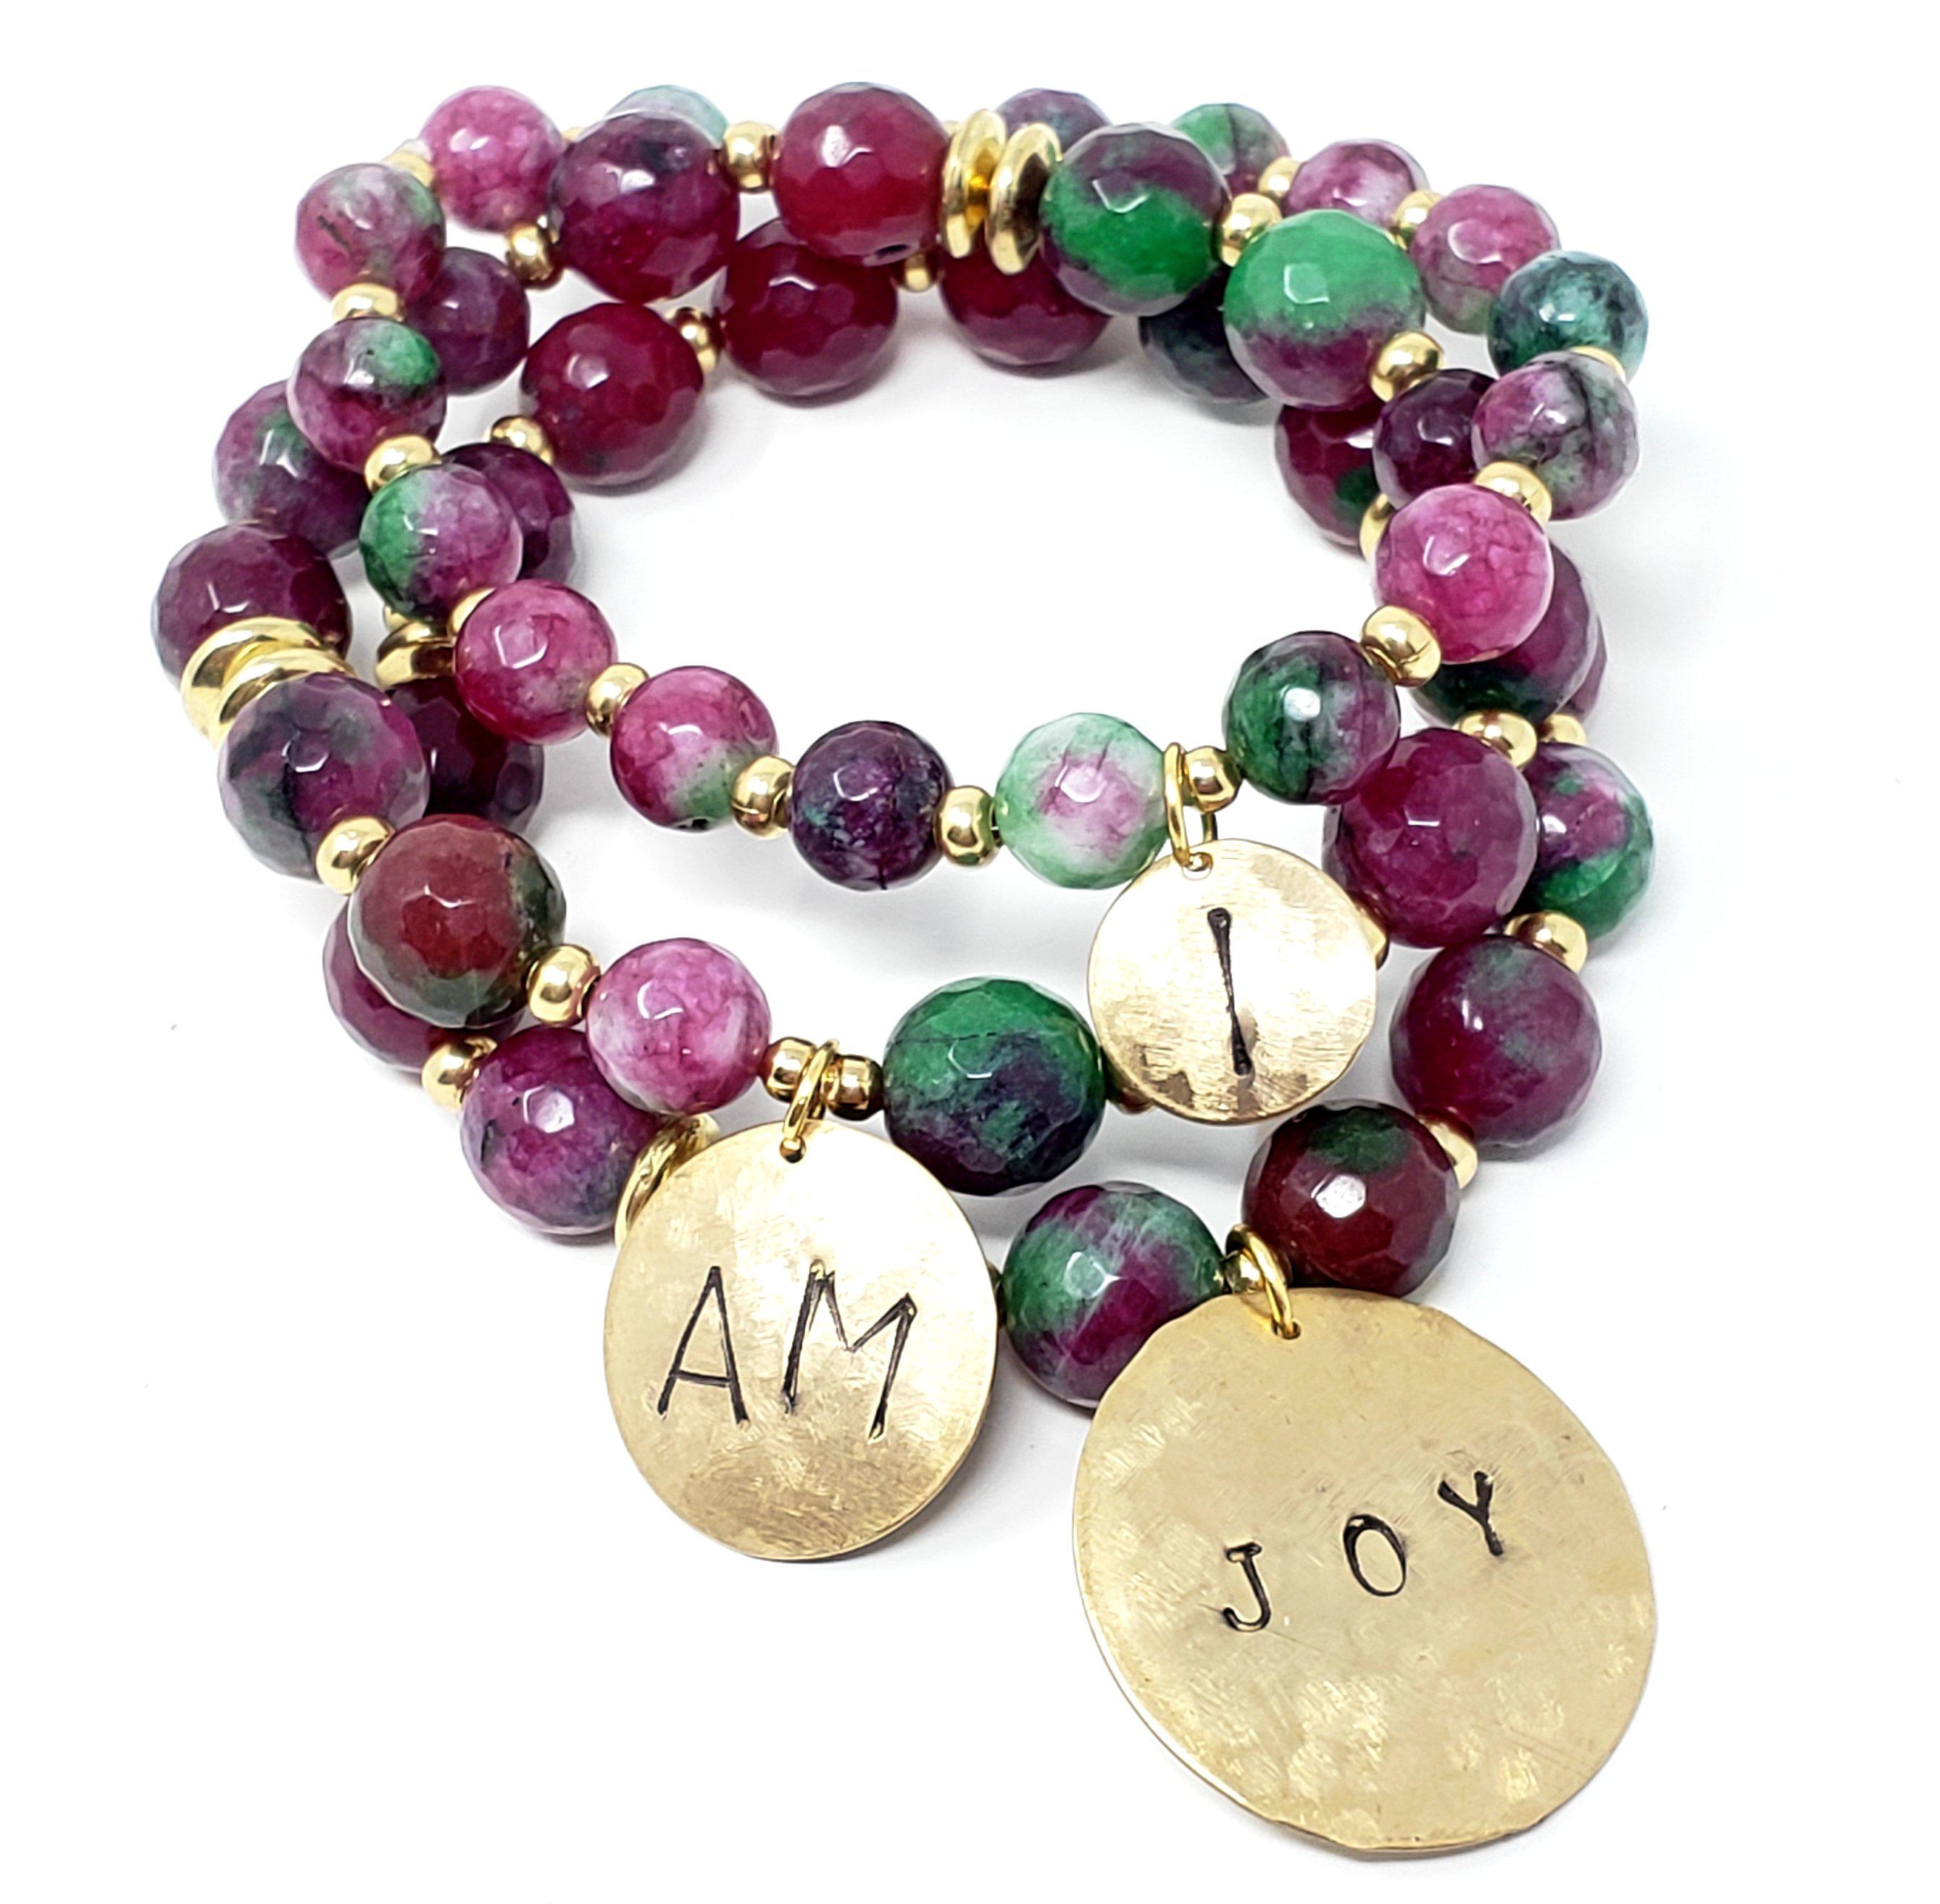 "I Am Joy" Affirmation Bracelets